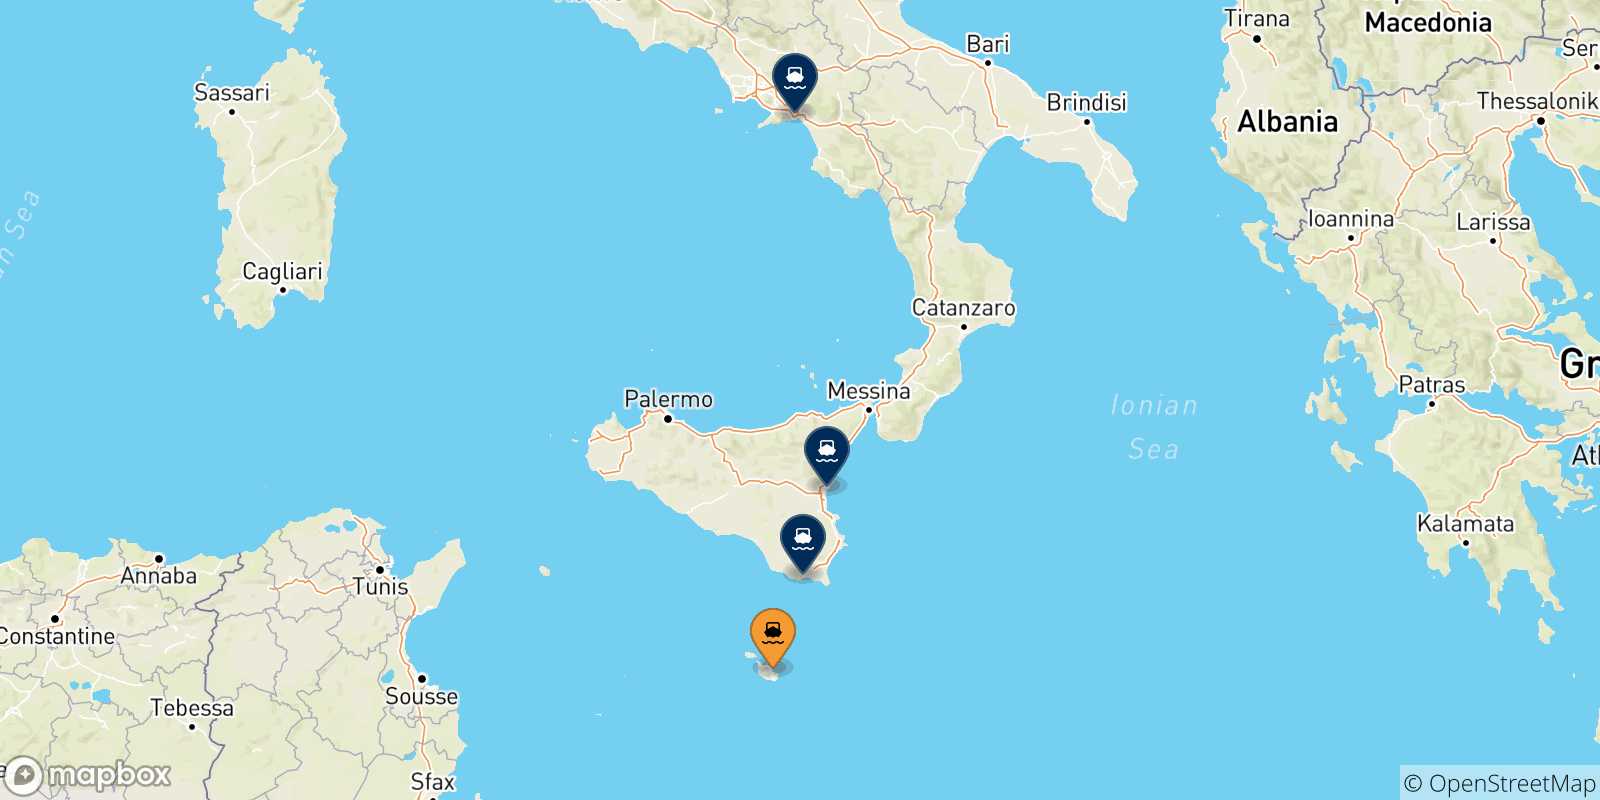 Mappa delle possibili rotte tra Malta e l'Italia